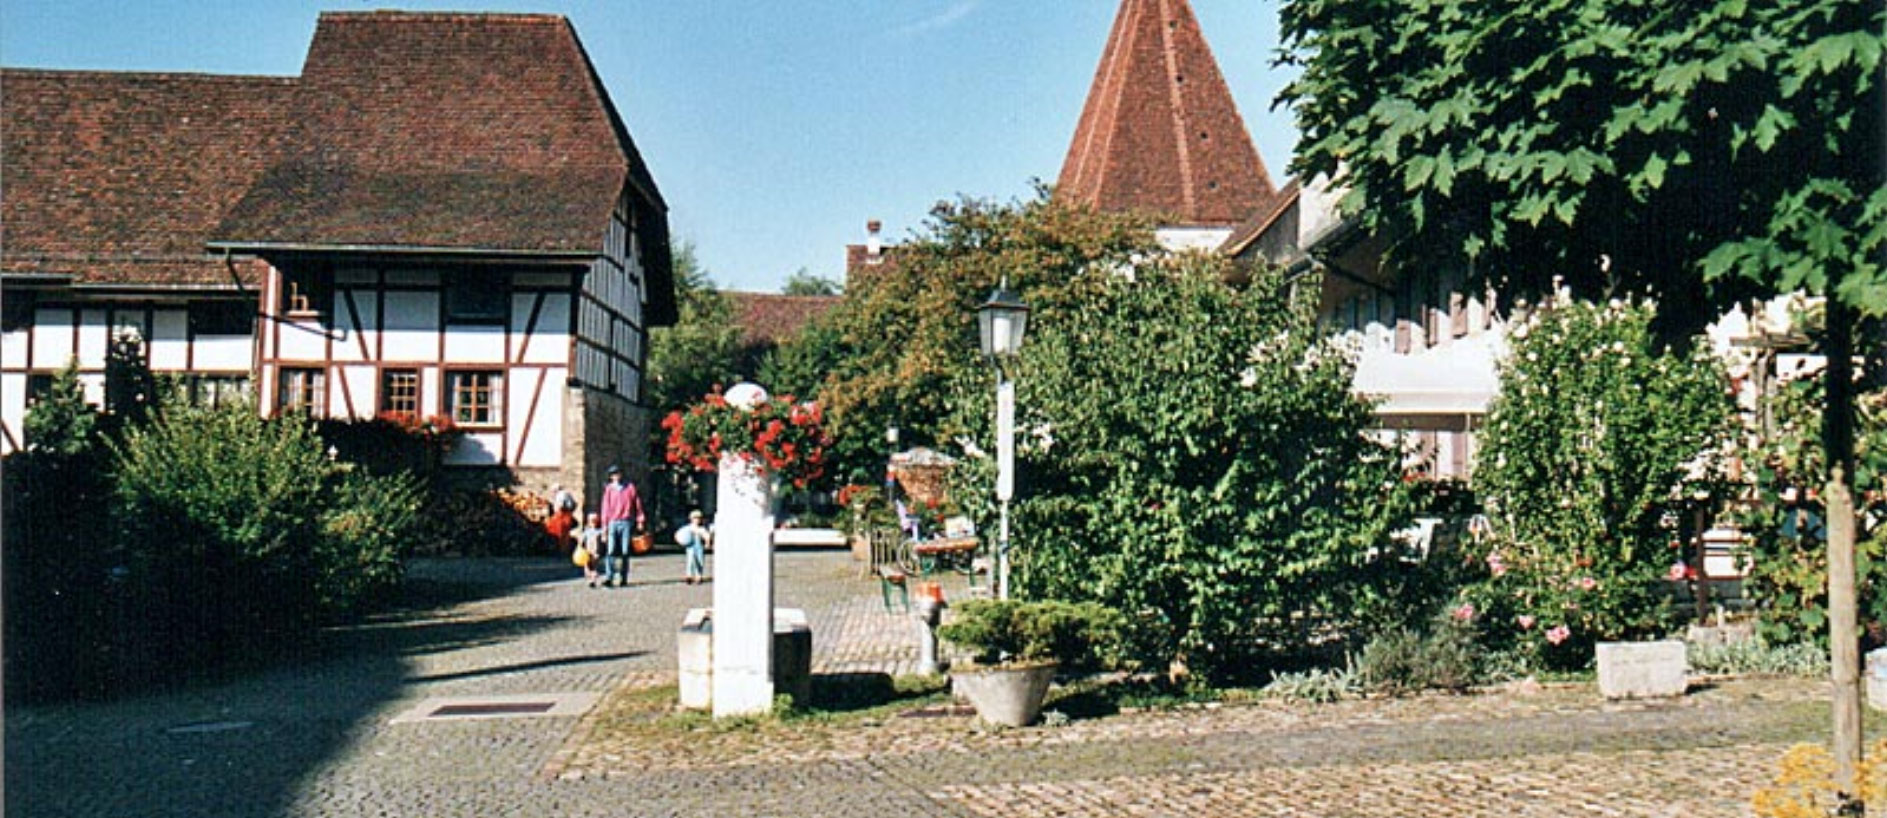 Wiedlisbach, Hinterstadt